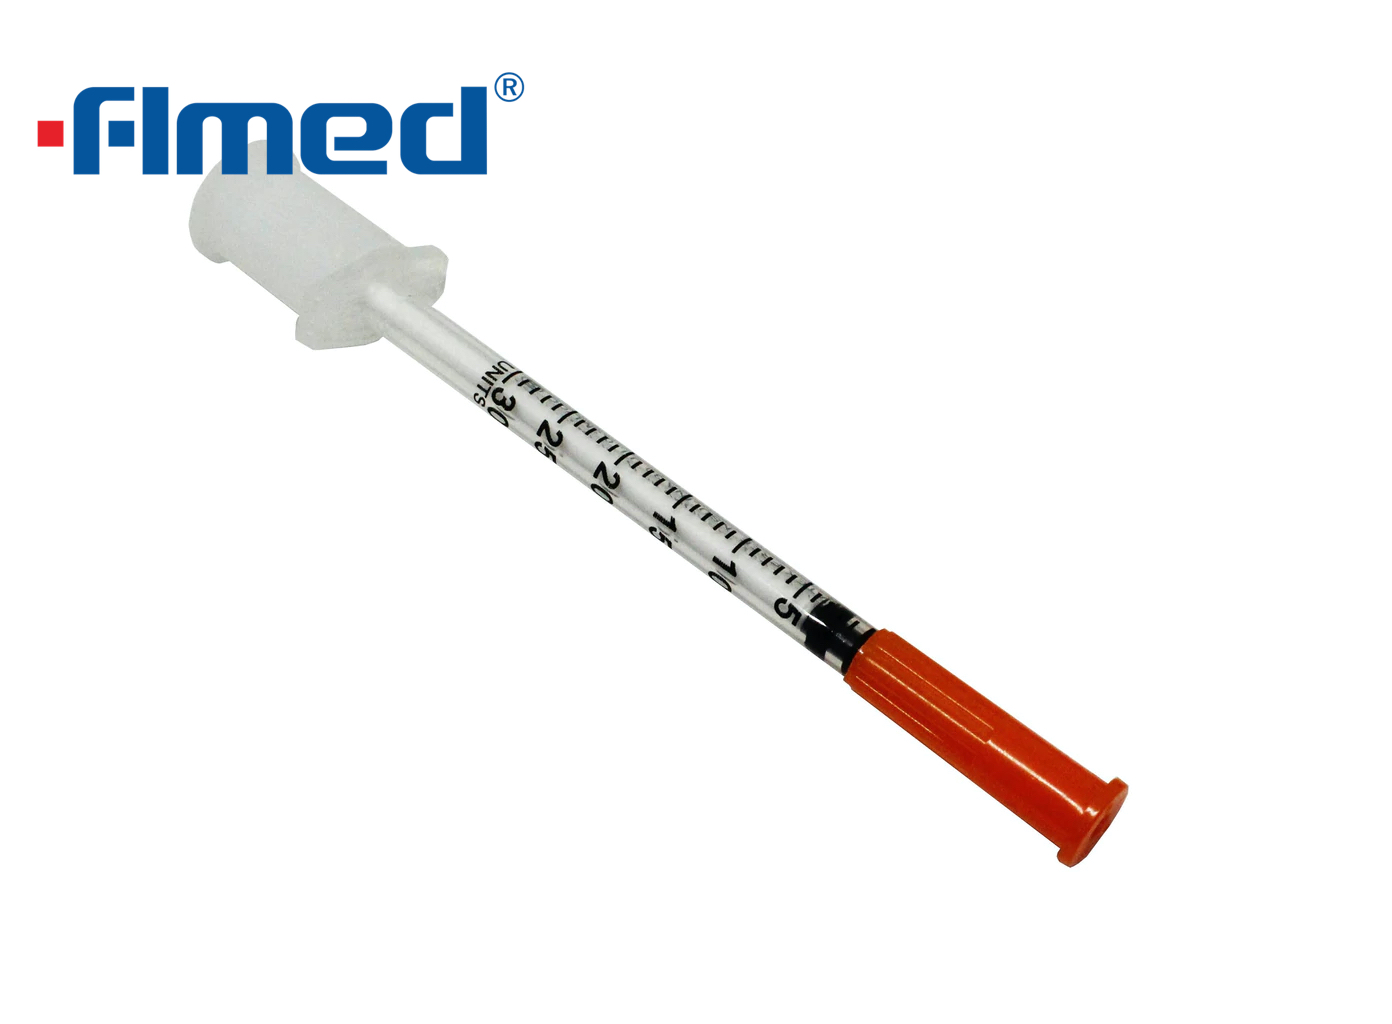 0,3 ml Insulinspritze & Nadel 30g x 8 mm (30g x 5/16 "Zoll)